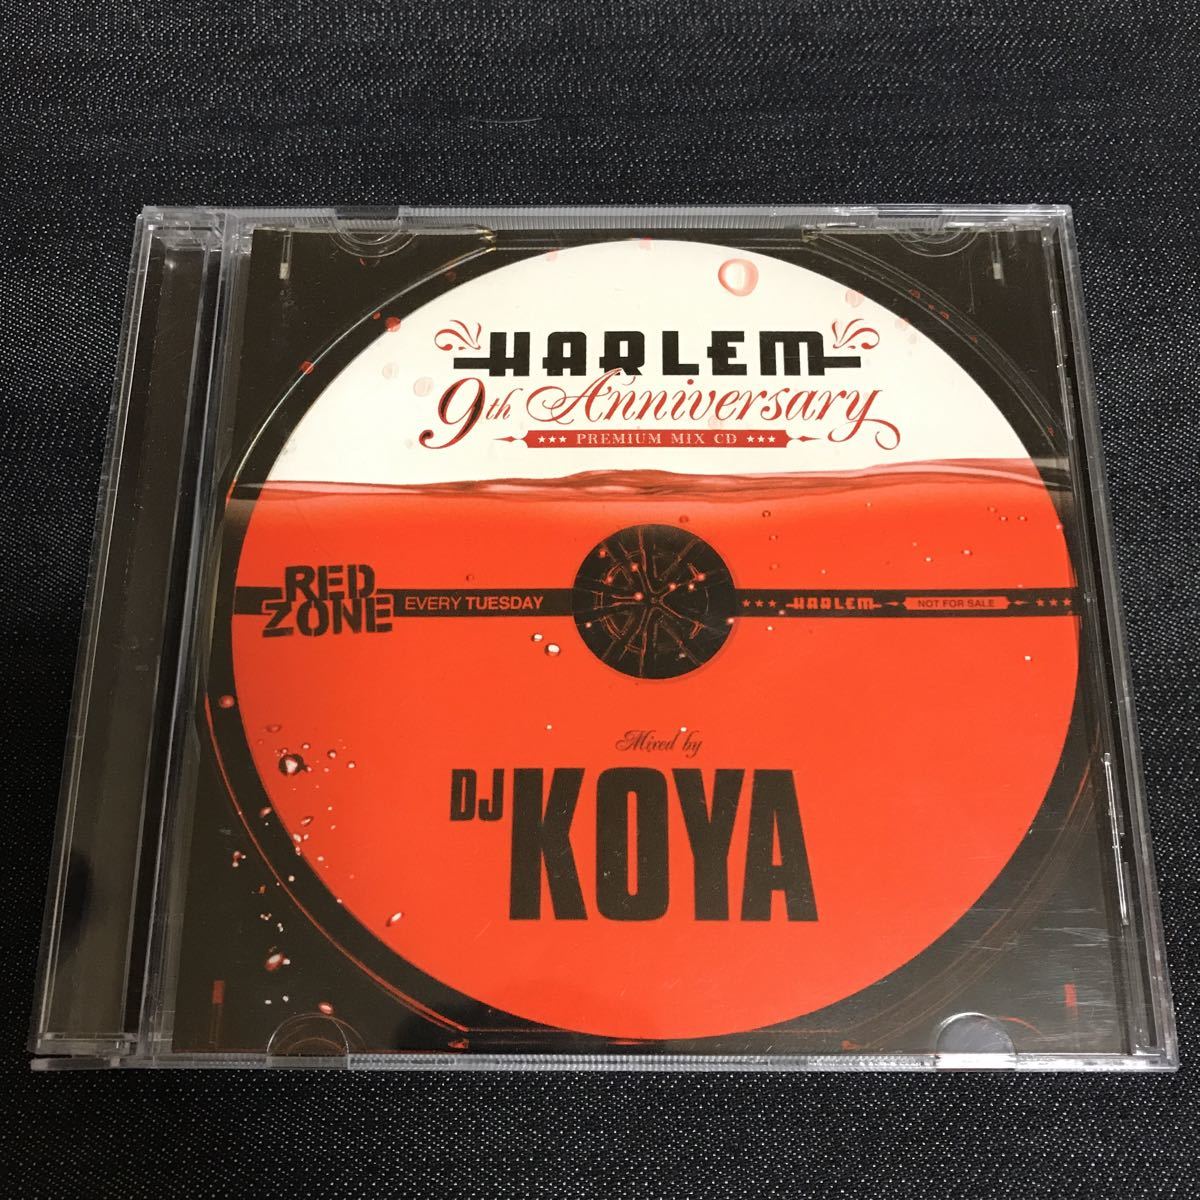 【非売品】HARLEM 9th Anniversary PREMIUM MIX CD / DJ KOYA/ Every Tuesday RED ZONE